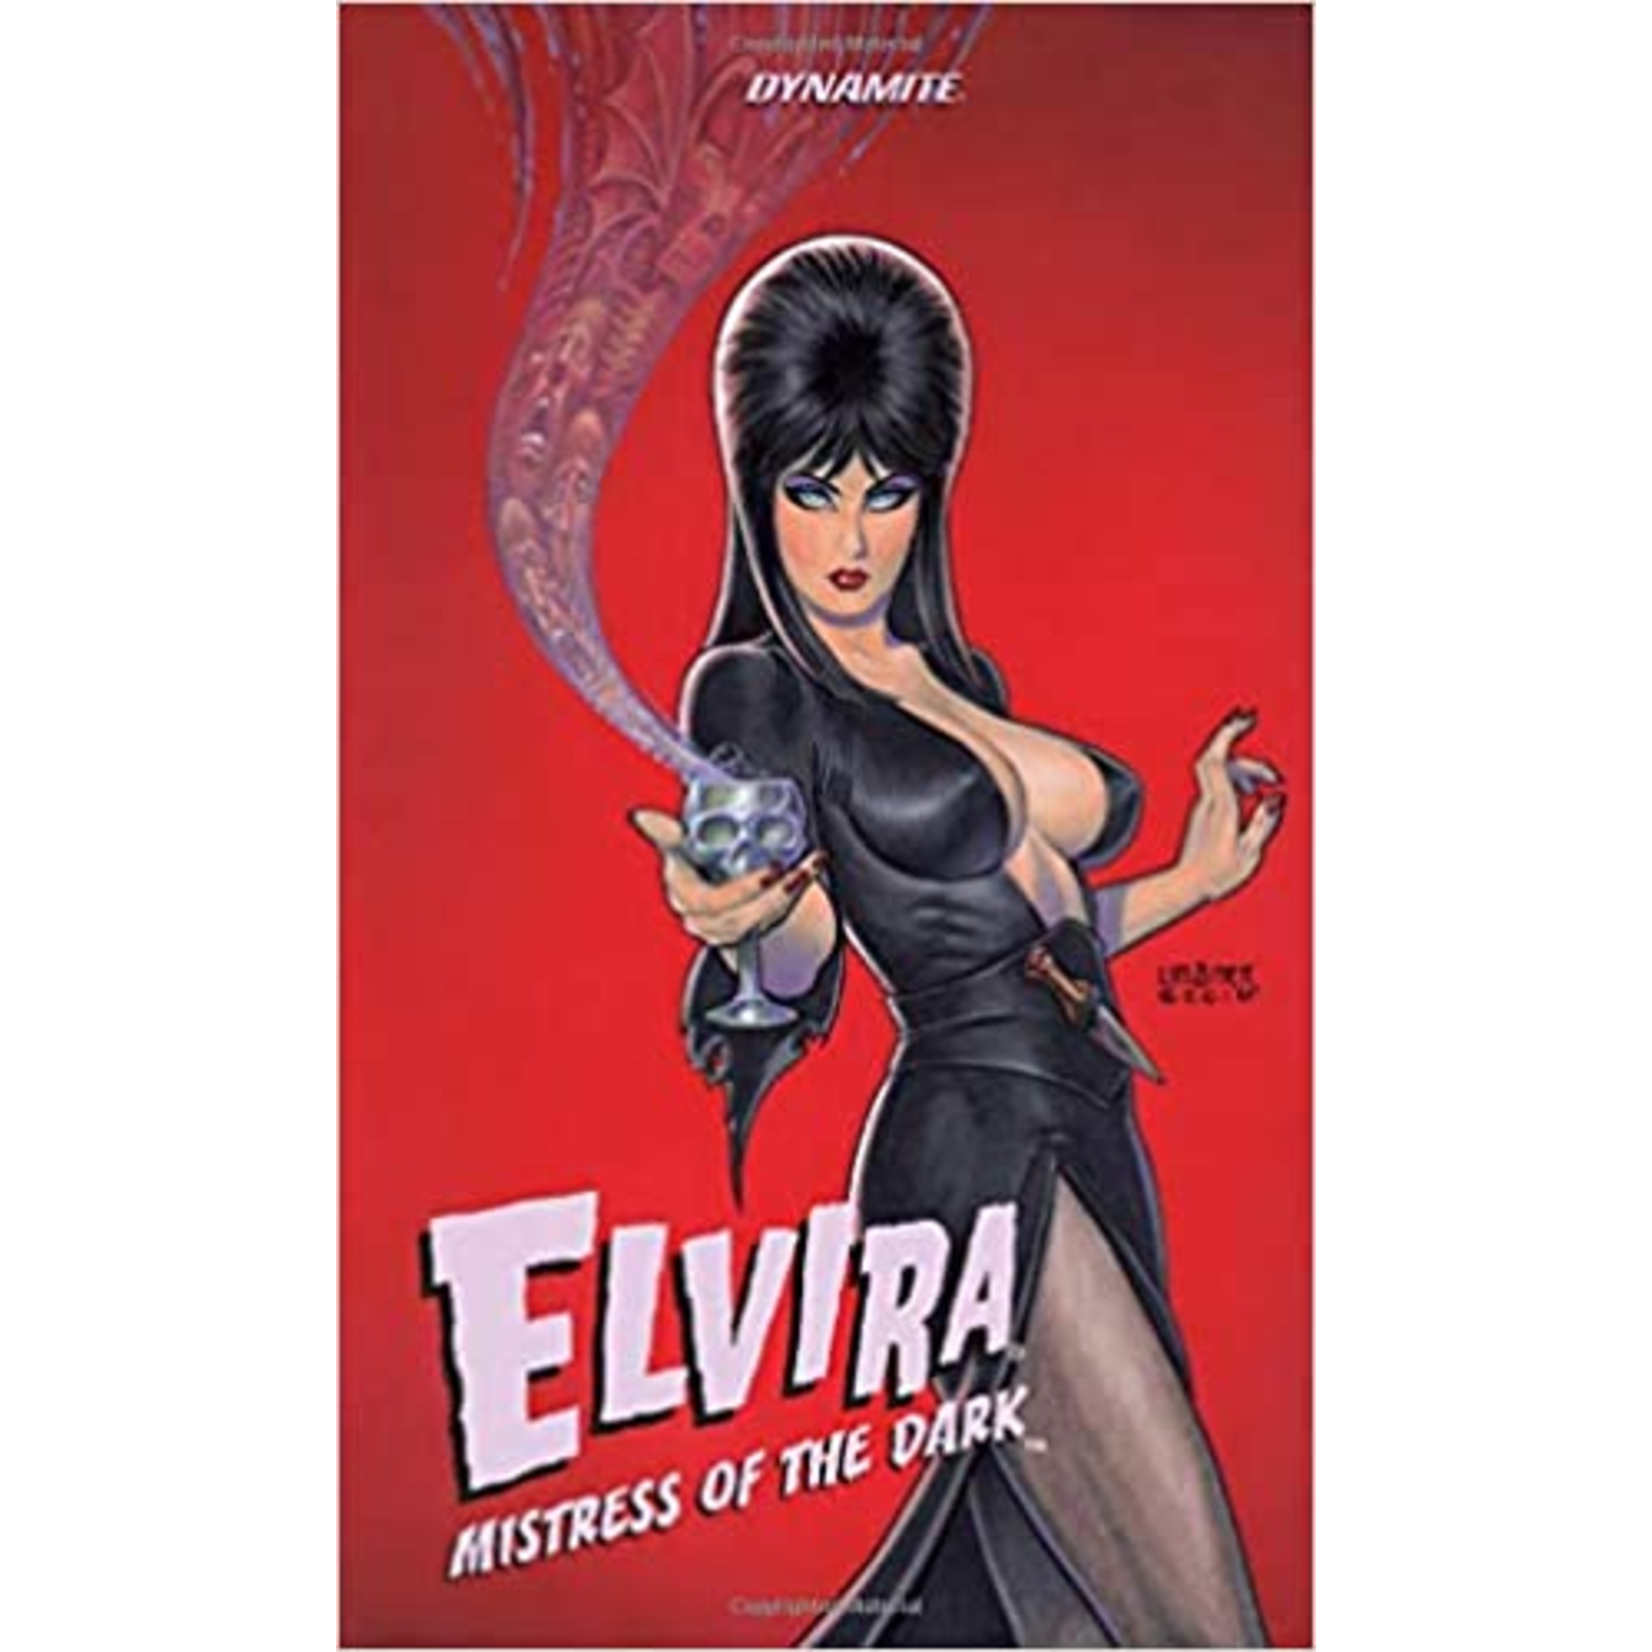 Dynamite ELVIRA: Mistress of the Dark Vol. 1 TP